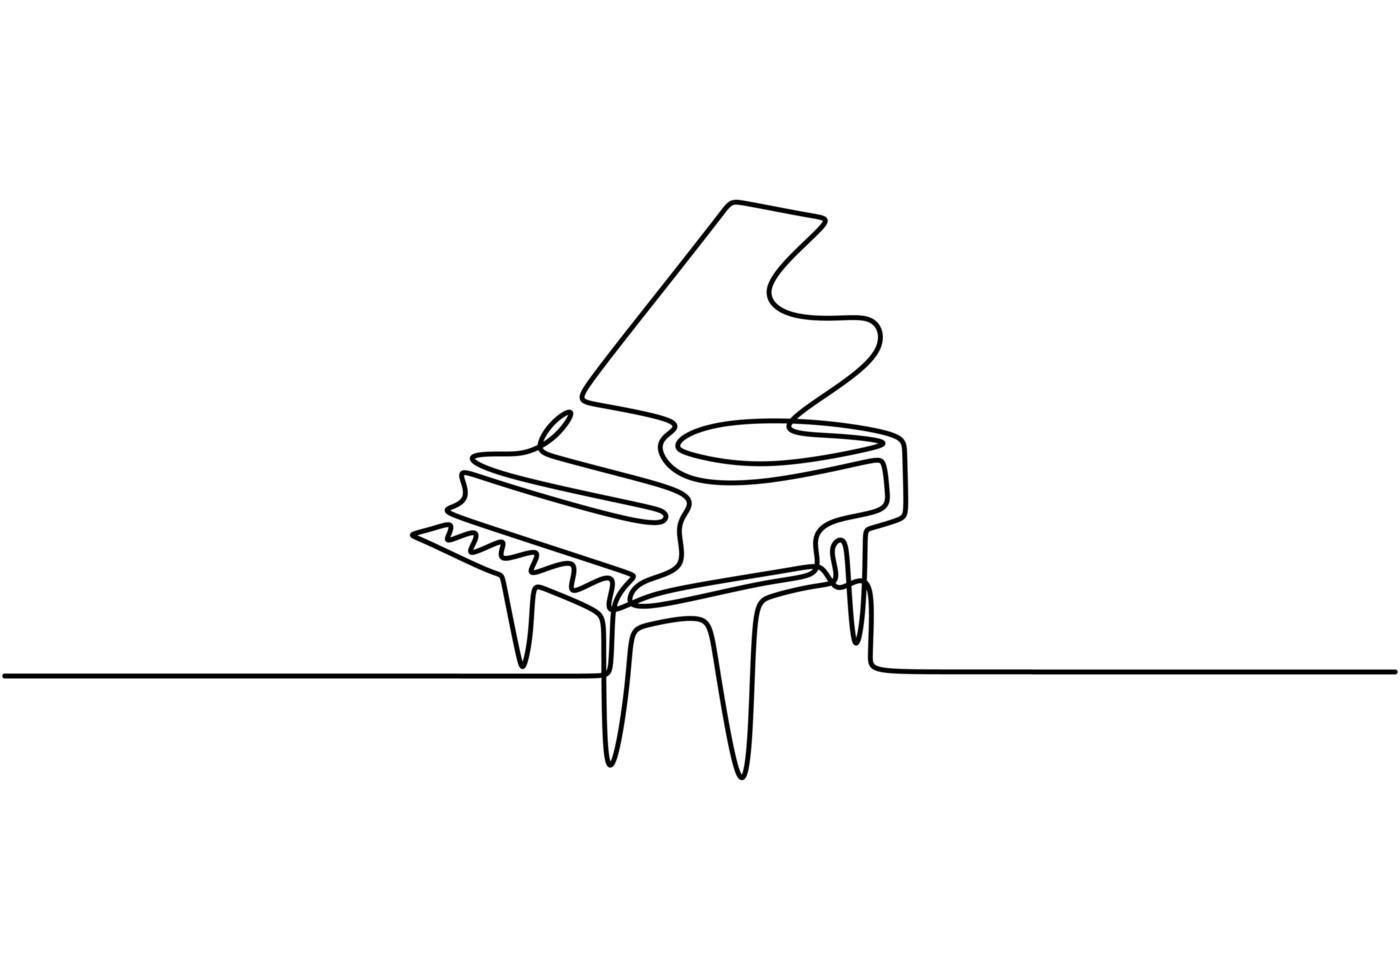 piano um desenho de linha. ilustração vetorial contínua única mão desenhada, instrumento de música clássica. arte minimalismo isolada no fundo branco. vetor